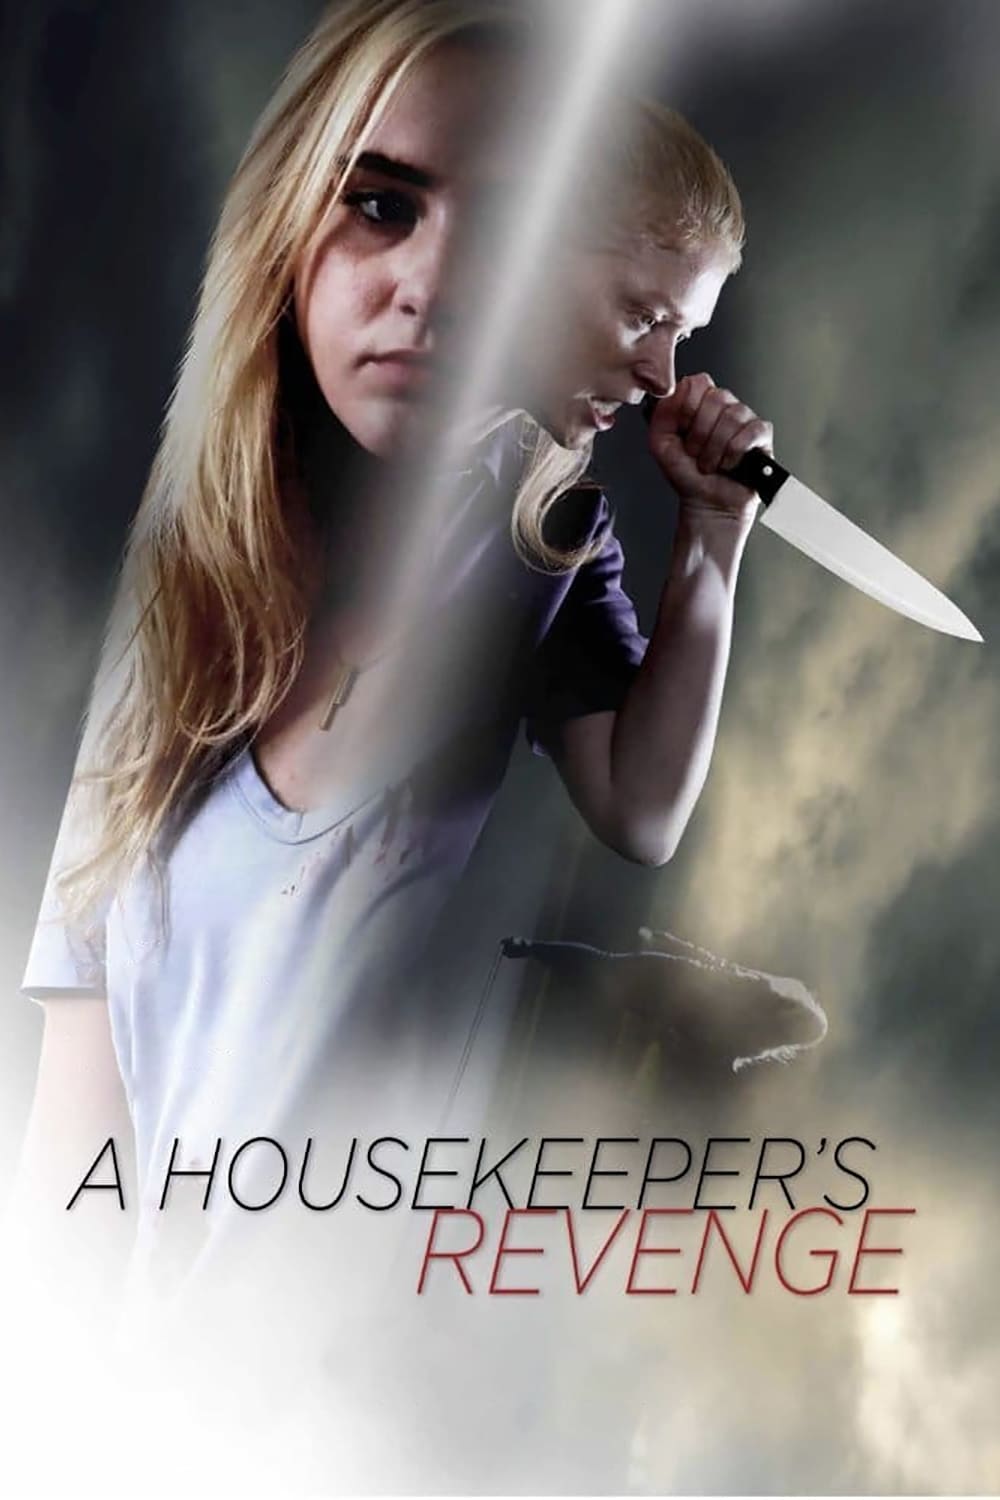 A Housekeeper's Revenge (2016)